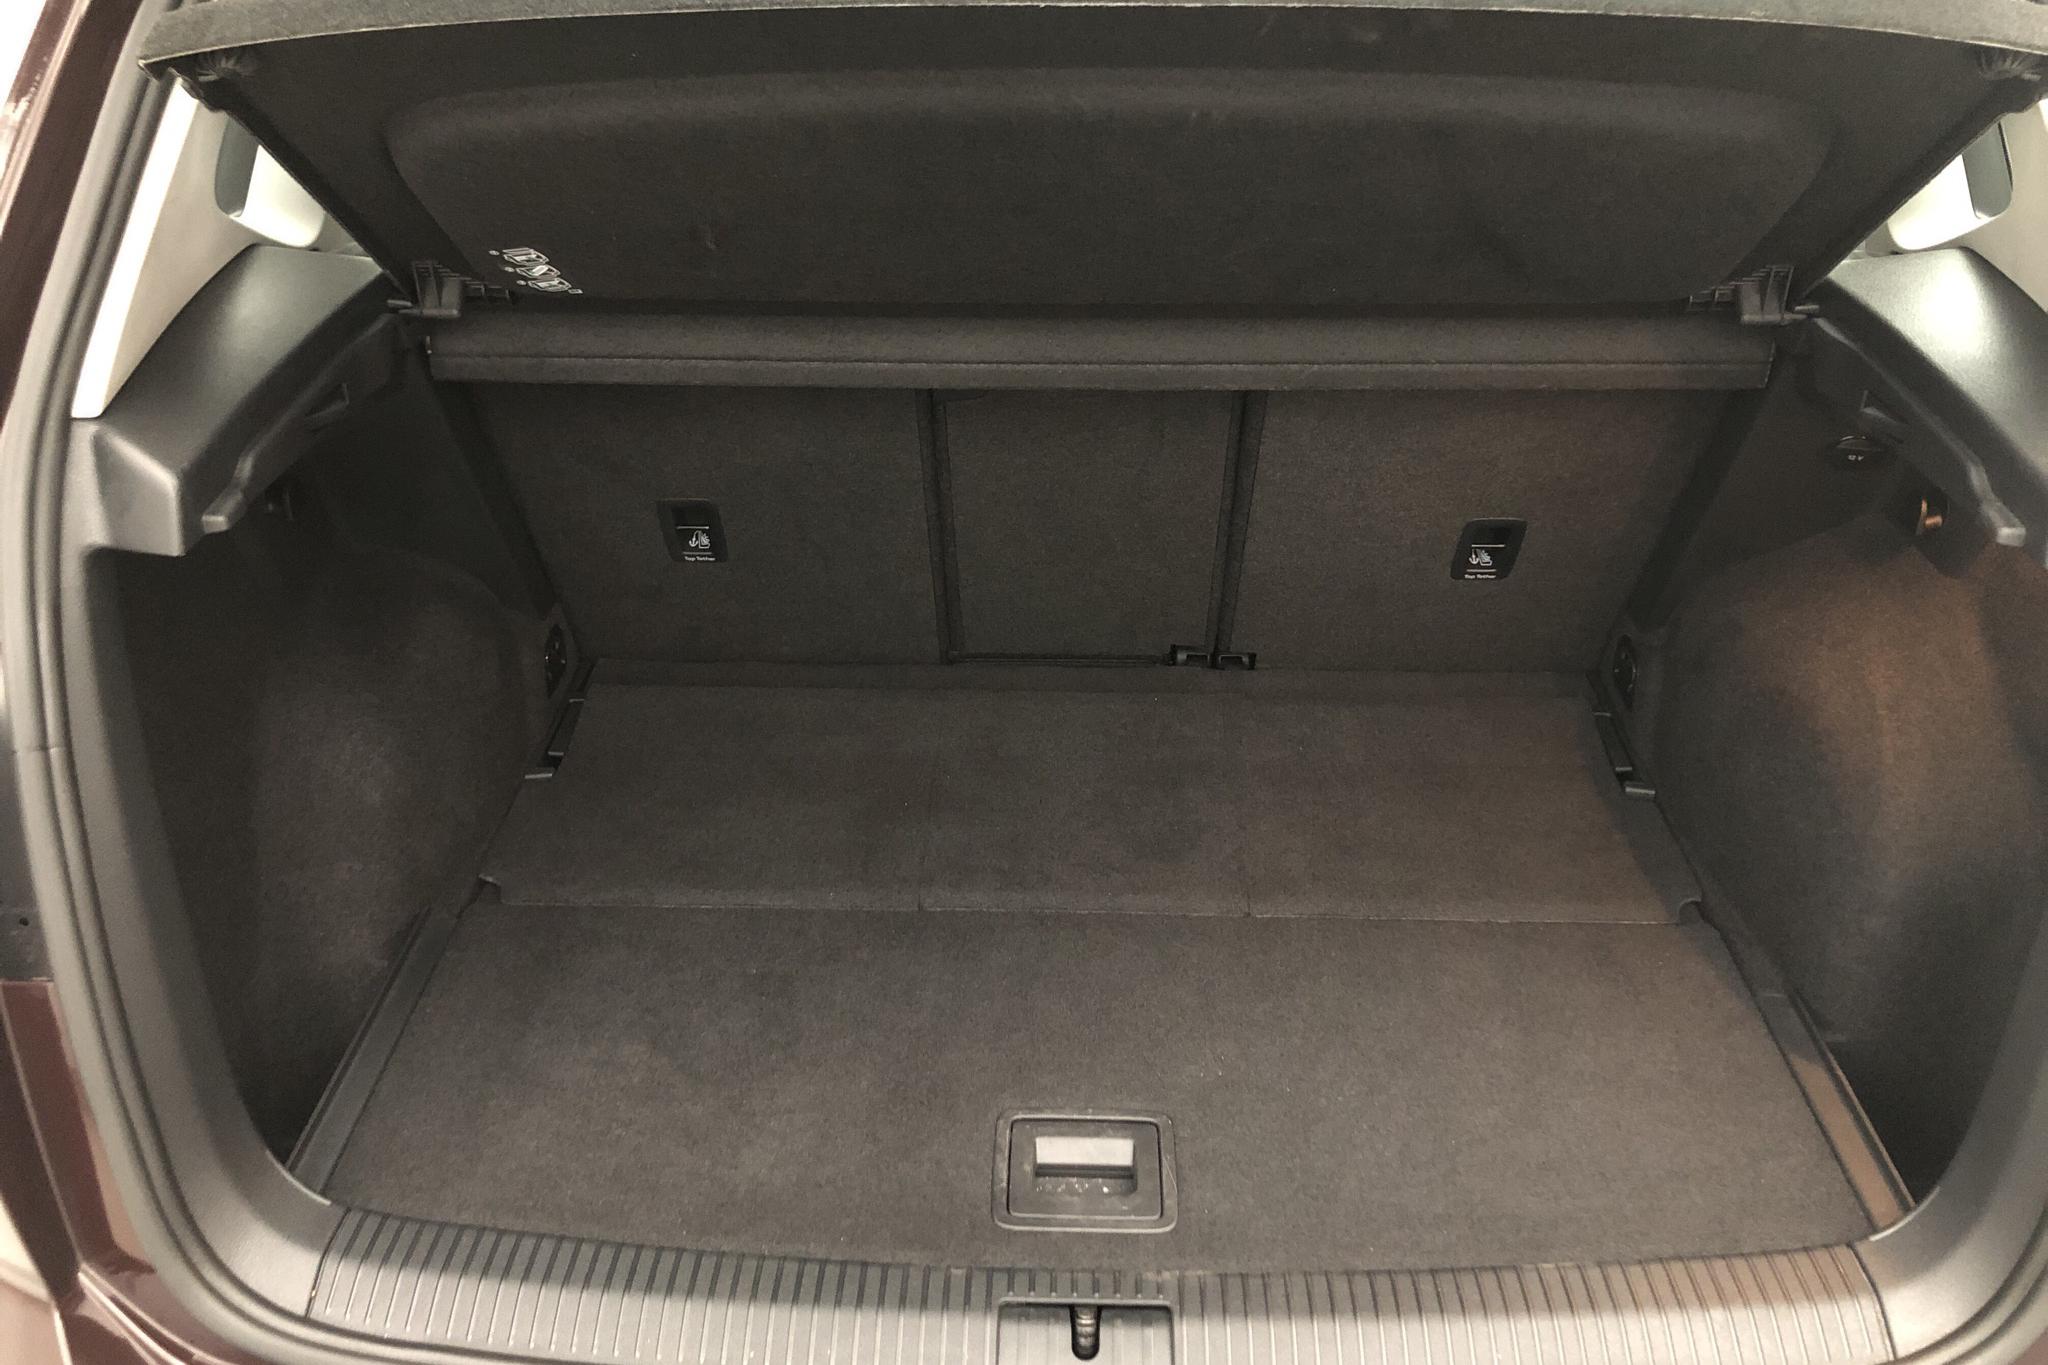 VW Golf VII 1.2 TSI BlueMotion Technology Sportsvan (110hk) - 68 960 km - Manual - Dark Brown - 2018